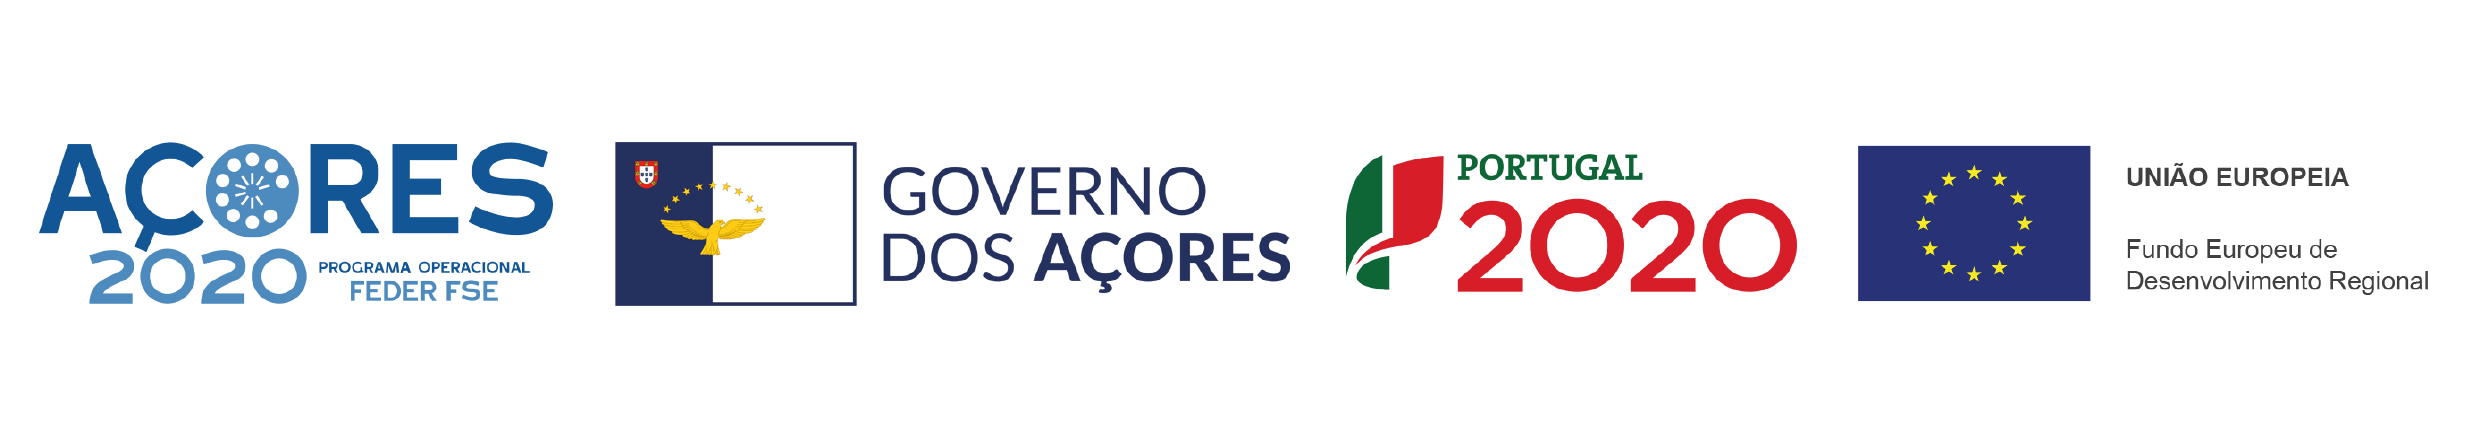 PO Açores 2020 - FEDER